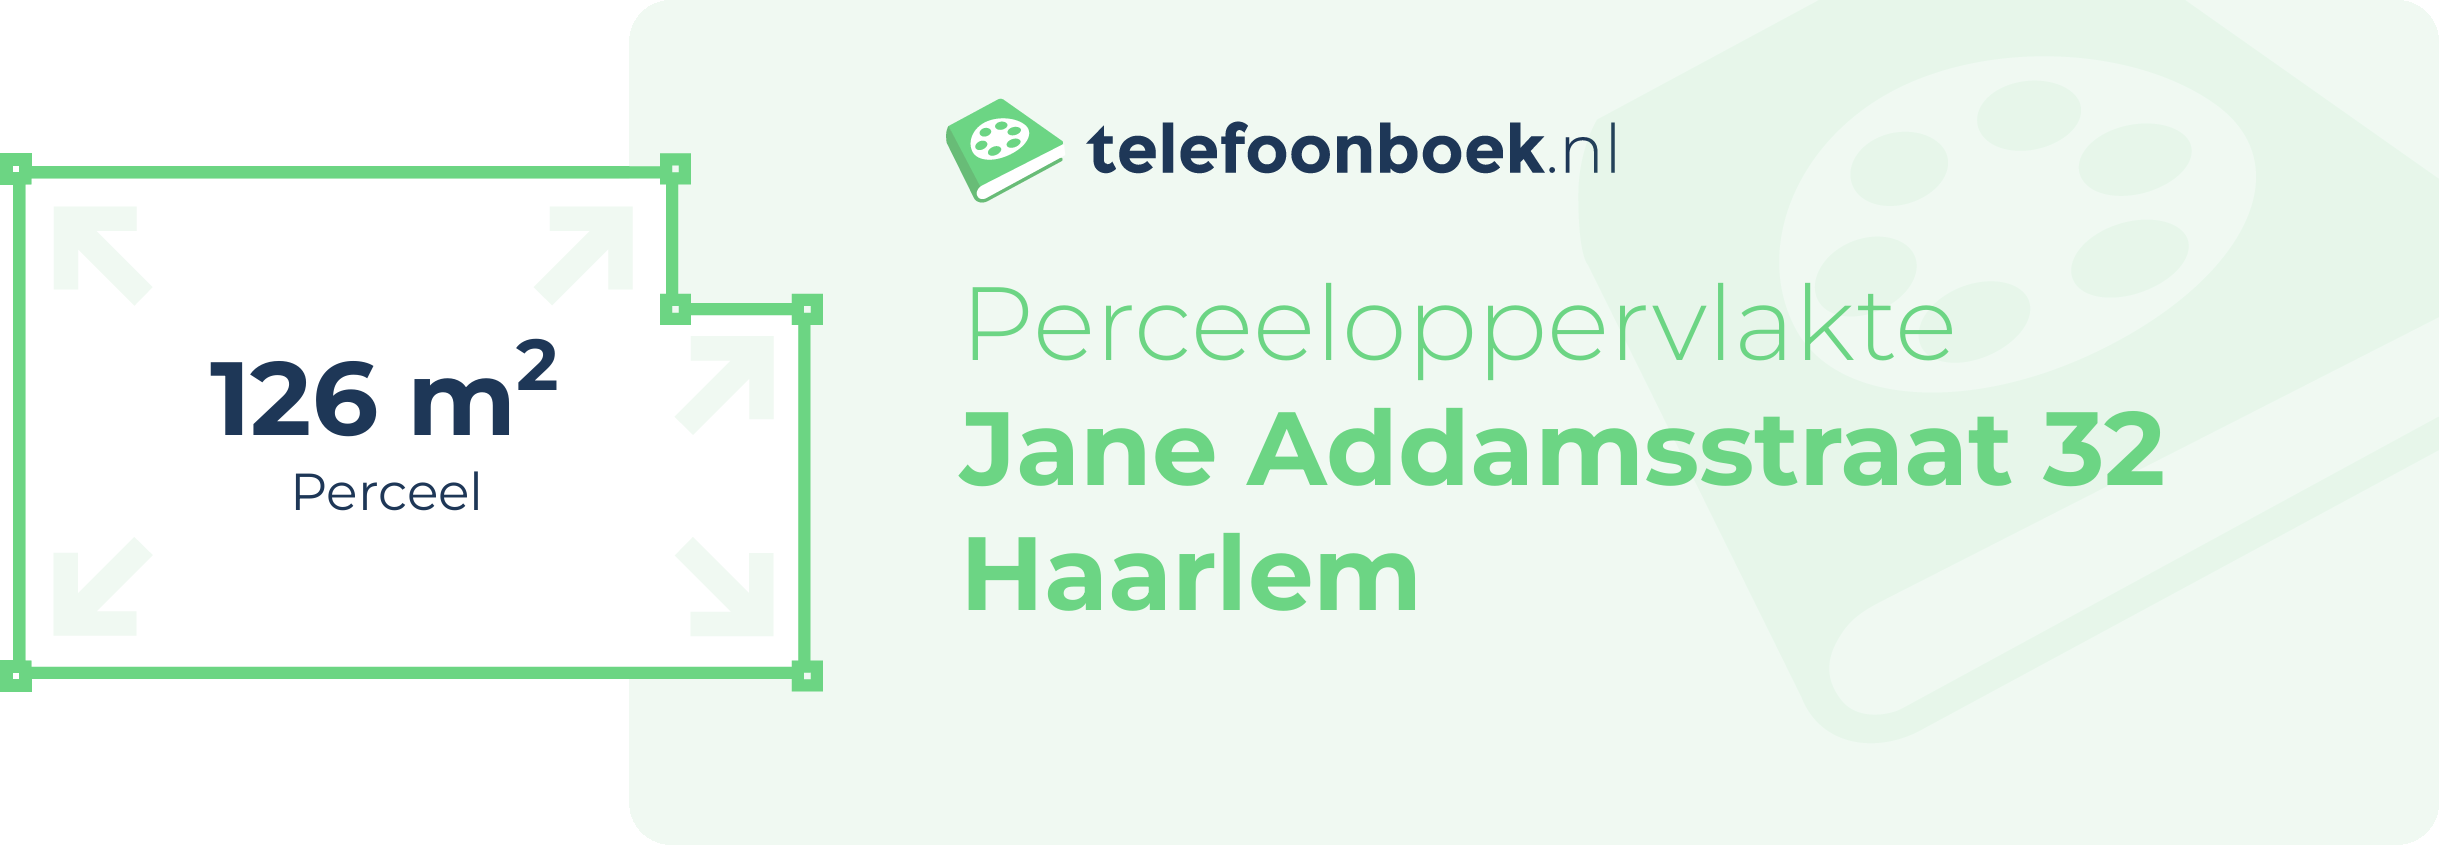 Perceeloppervlakte Jane Addamsstraat 32 Haarlem